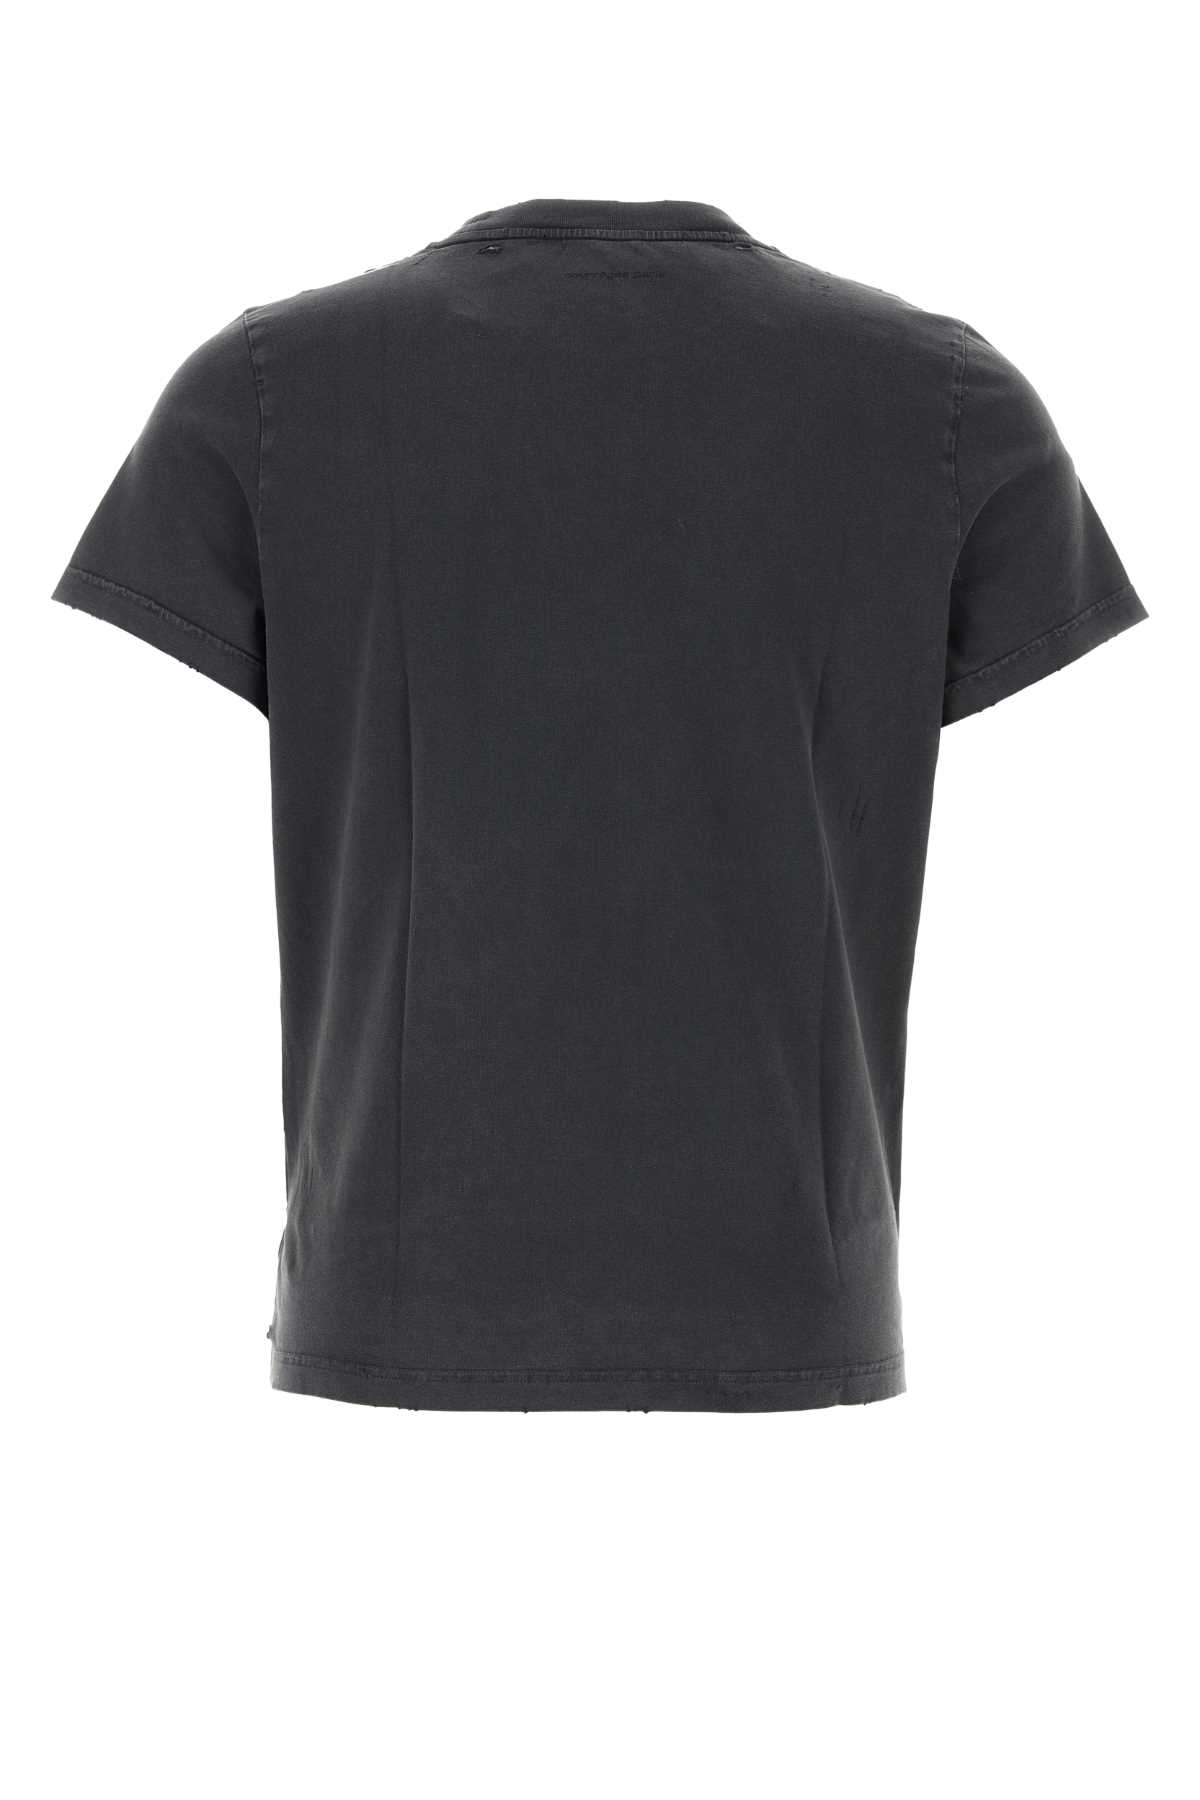 Courrèges Graphite Cotton T-shirt In Stonewashedgrey